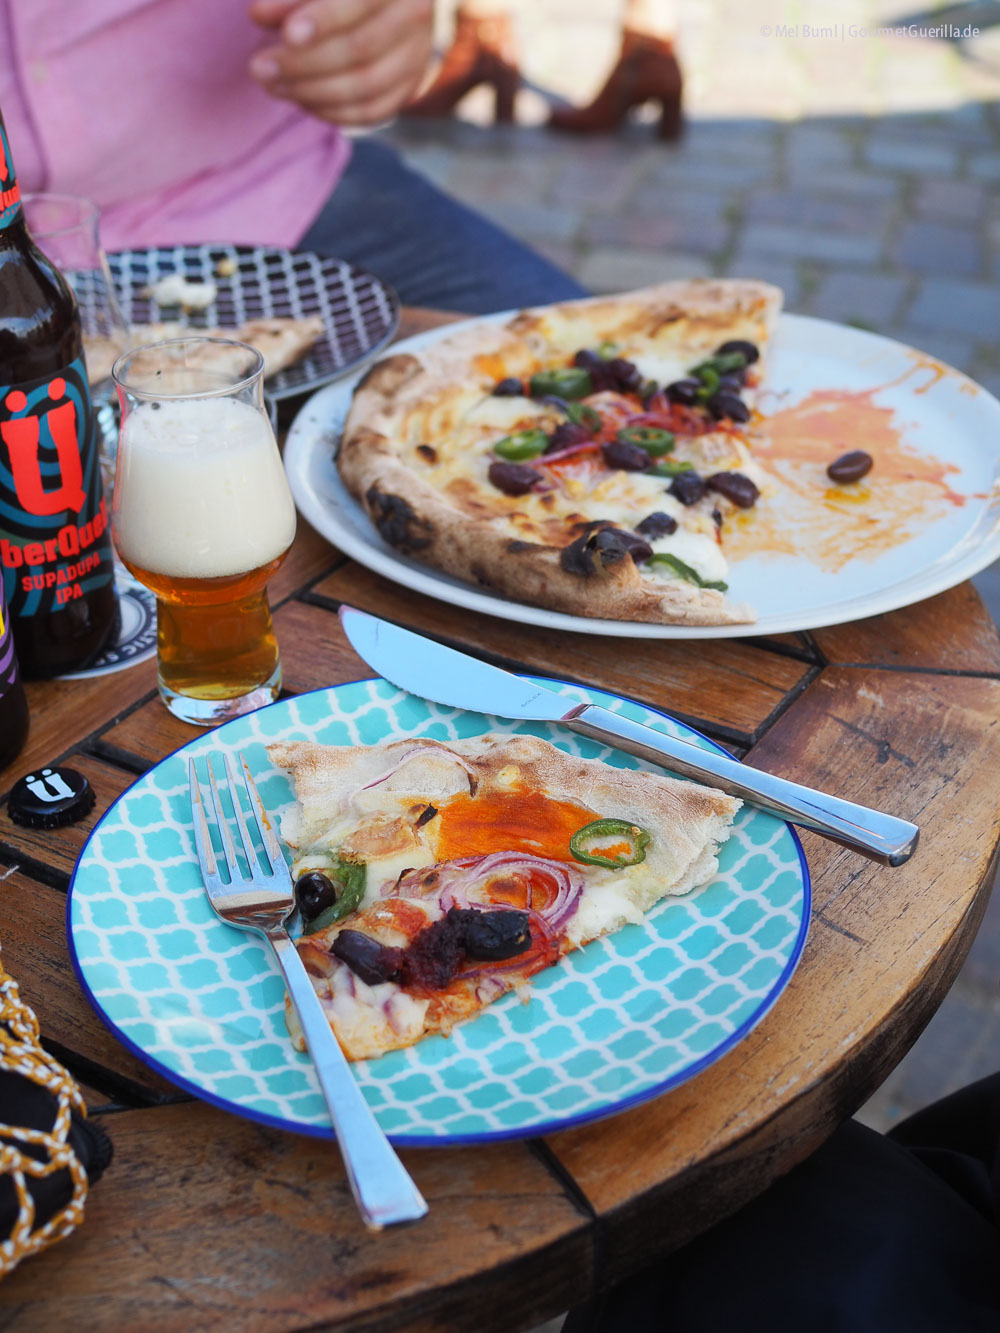 Überquell Micro Brewery, Biergarten und Pizzeria in Hamburg St. Pauli | GourmetGuerilla.de